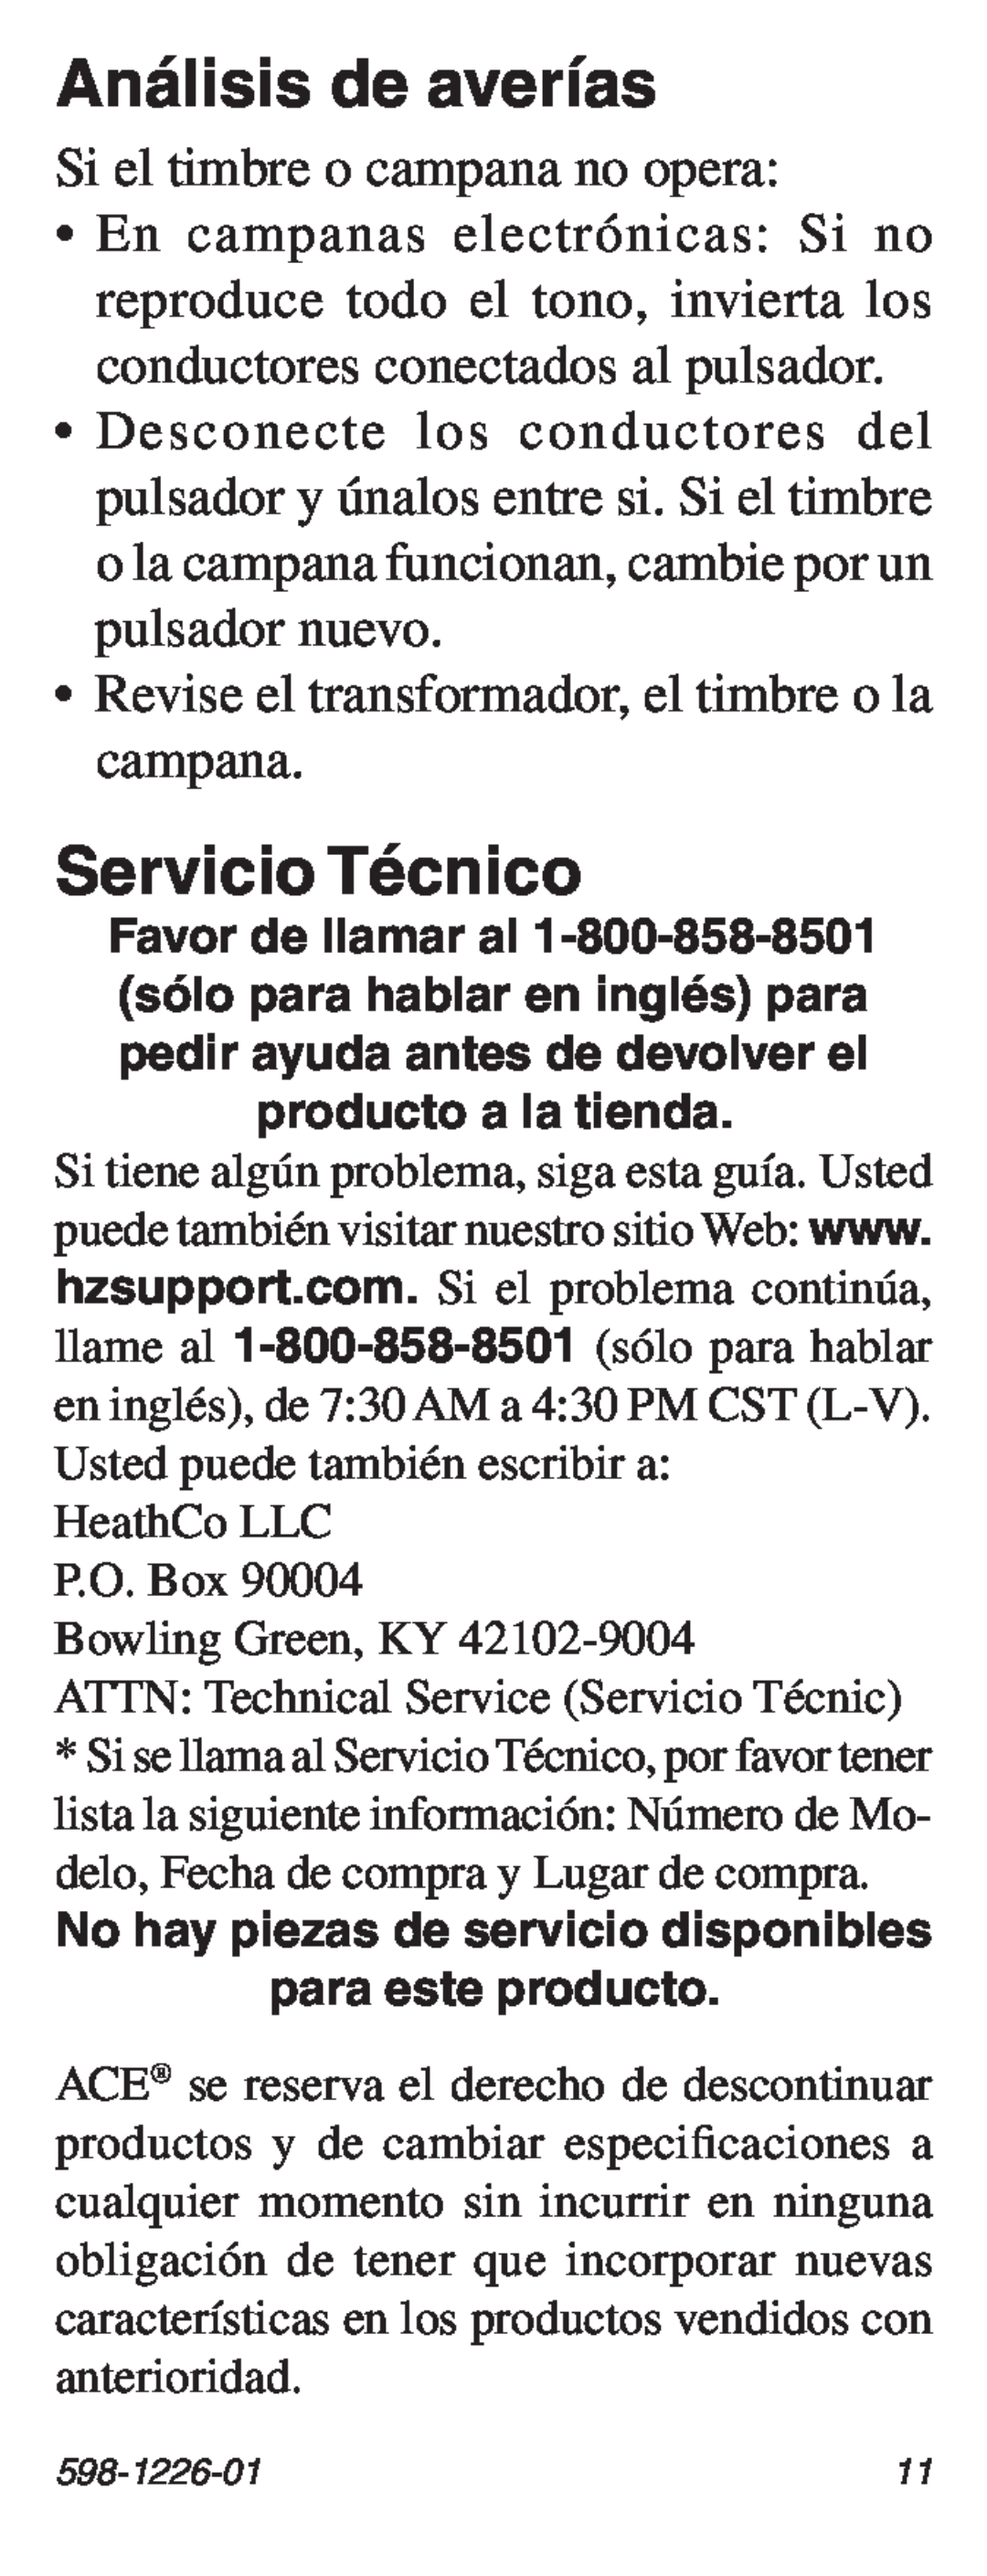 Heath Zenith 598-1226-01 manual Análisis de averías, Servicio Técnico, HeathCo LLC P.O. Box Bowling Green, KY 